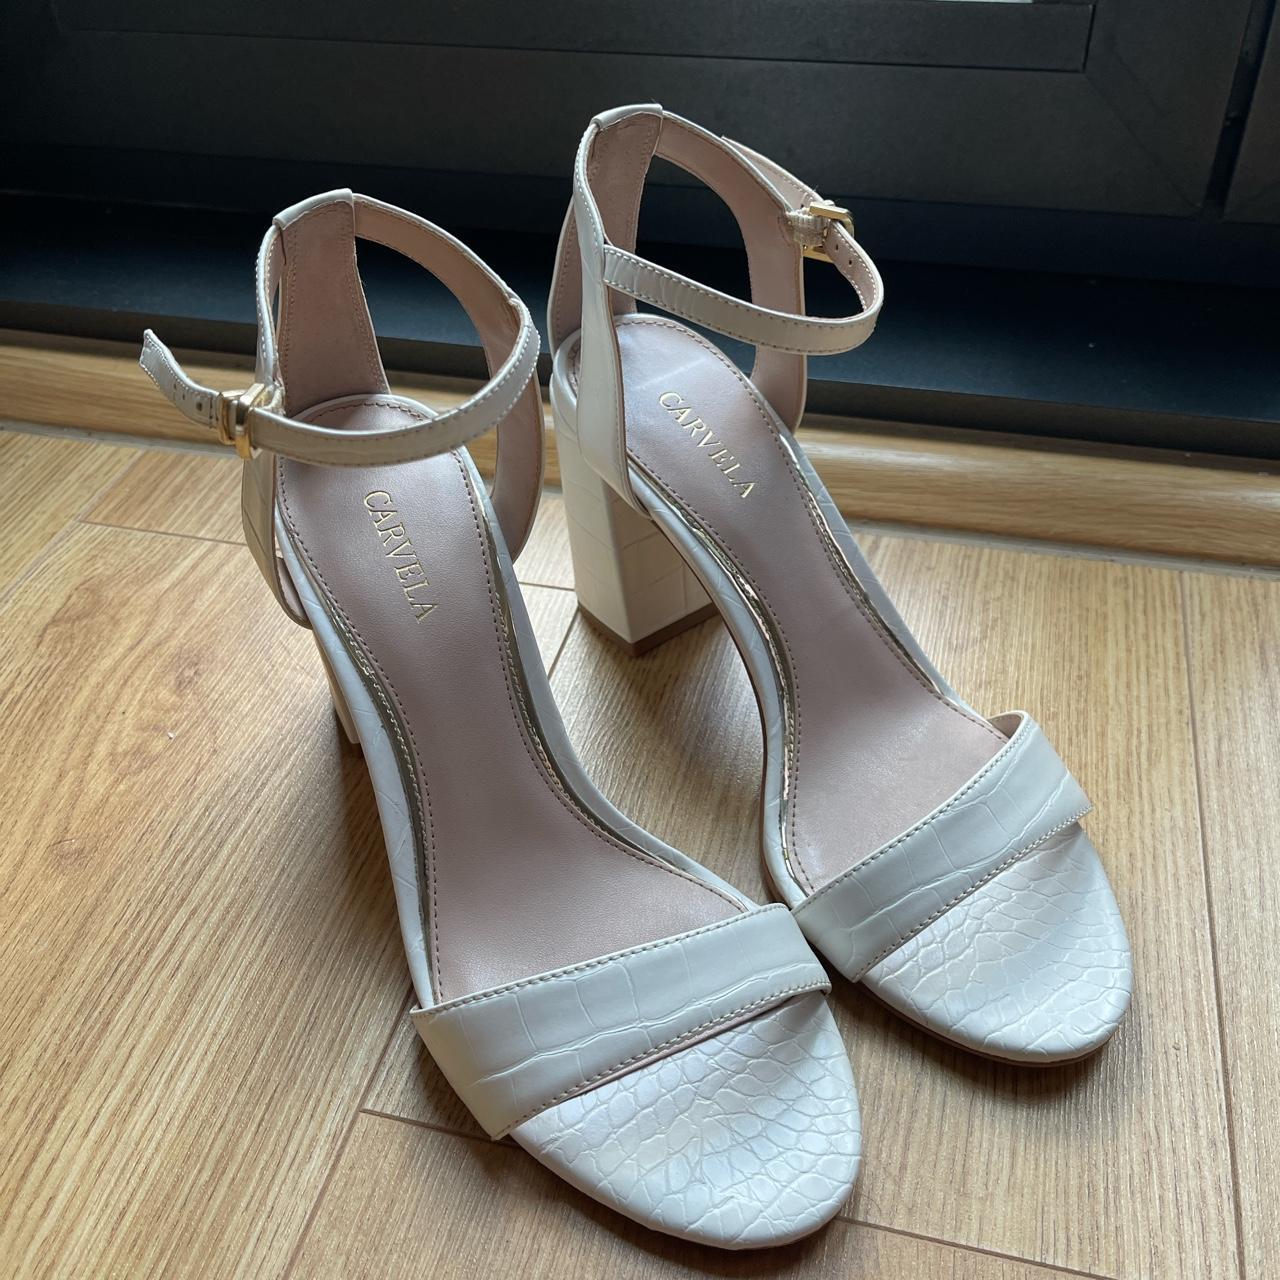 Carvela white sandals. High heels, worn once only - Depop